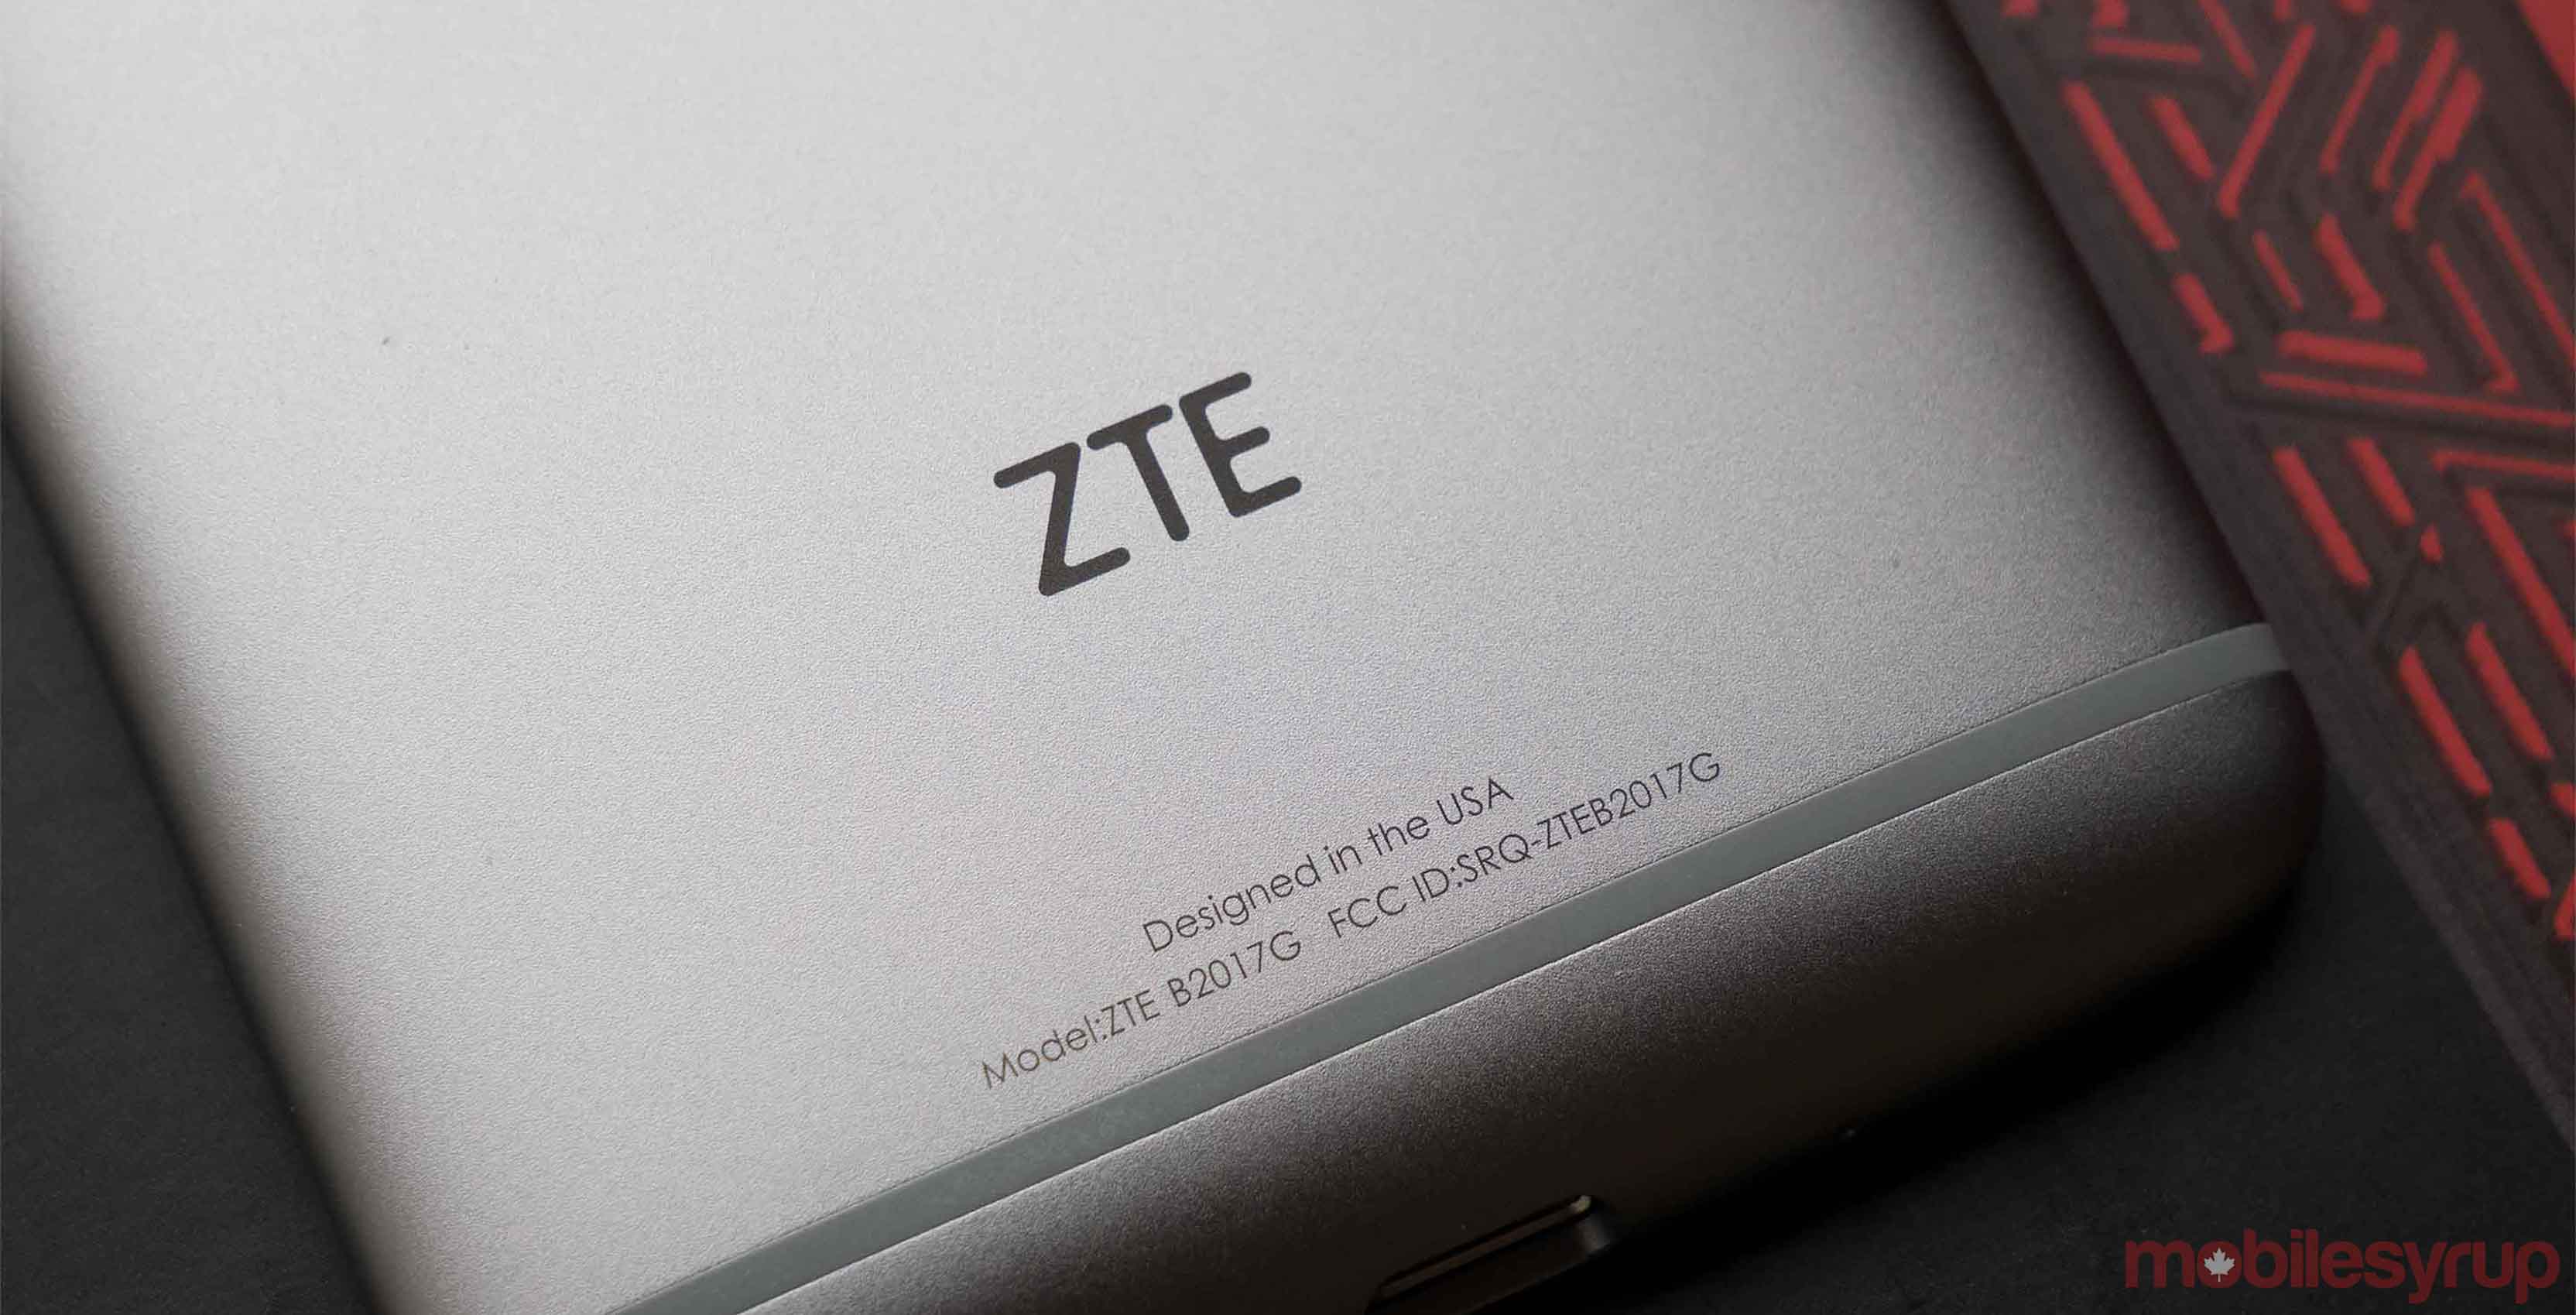 ZTE Axon 7 Mini smartphone